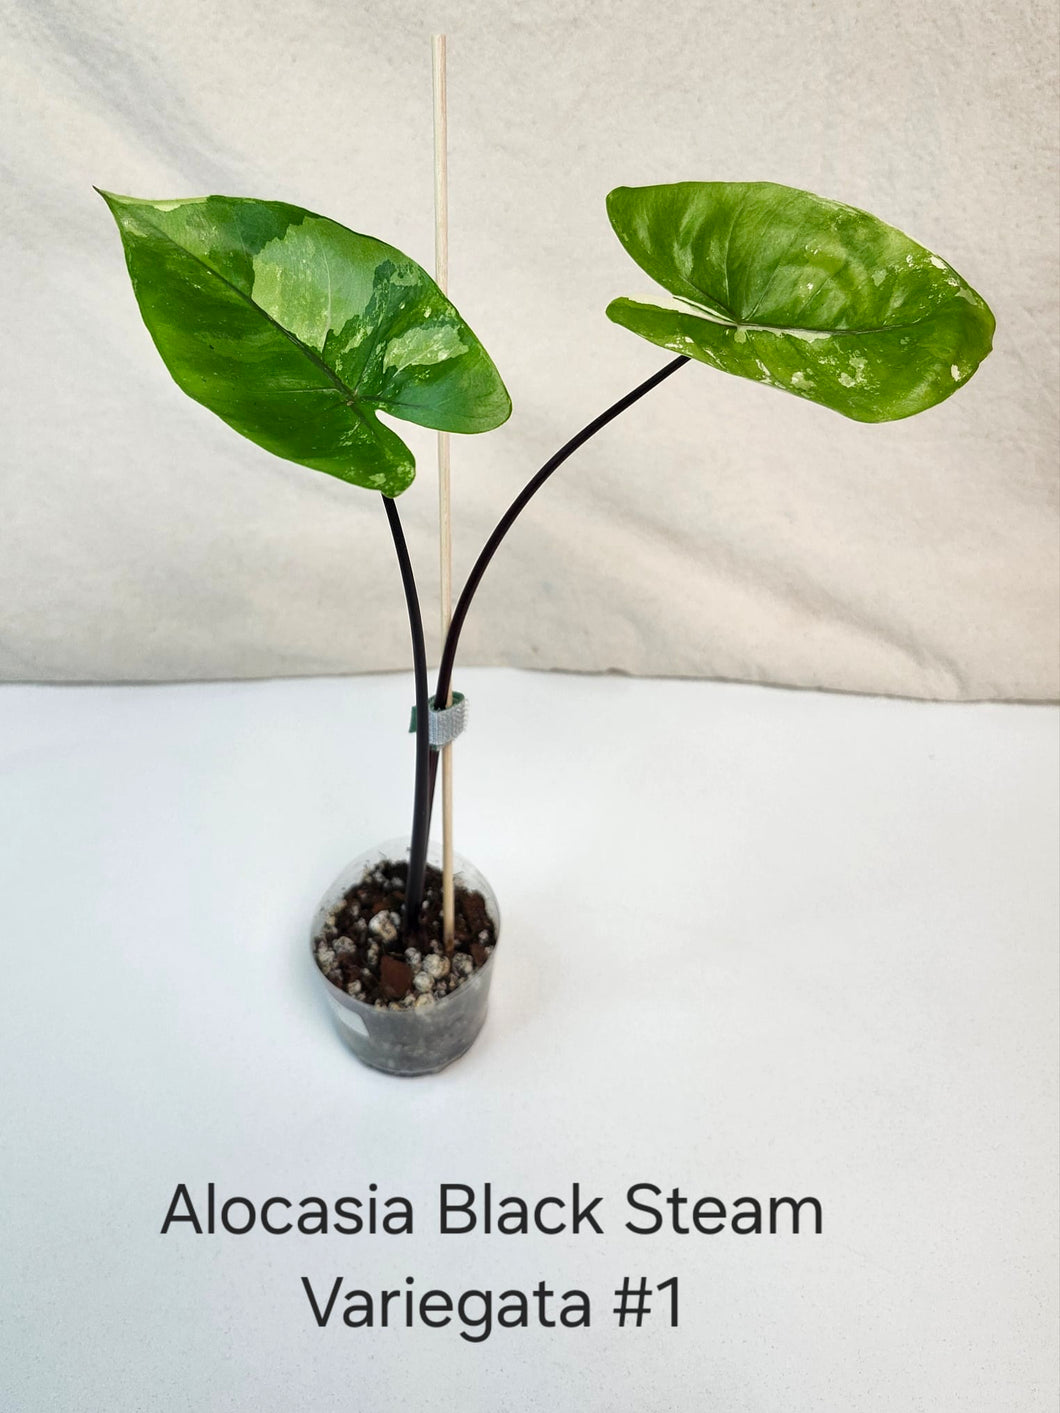 Alocasia black stem variegata #1